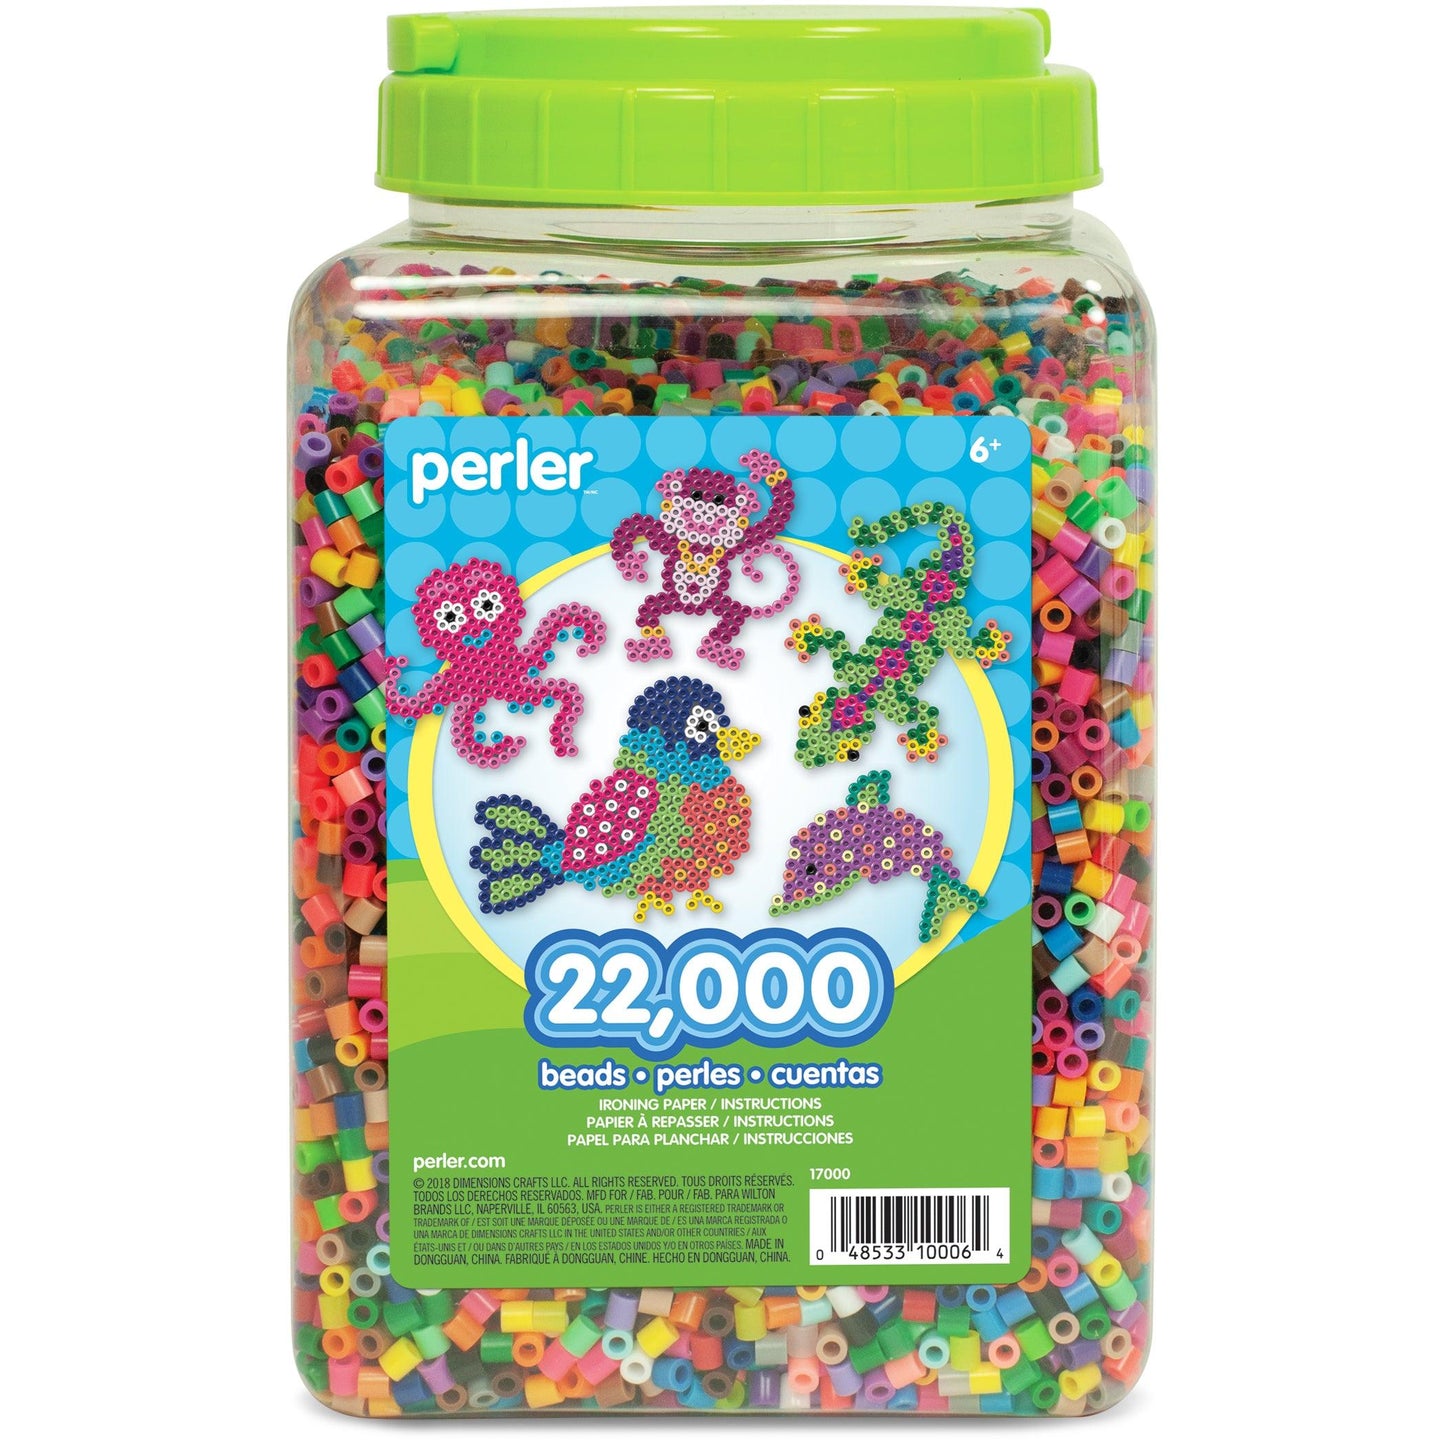 Multi-Mix Fuse Beads Jar, Pack of 22000 - Loomini